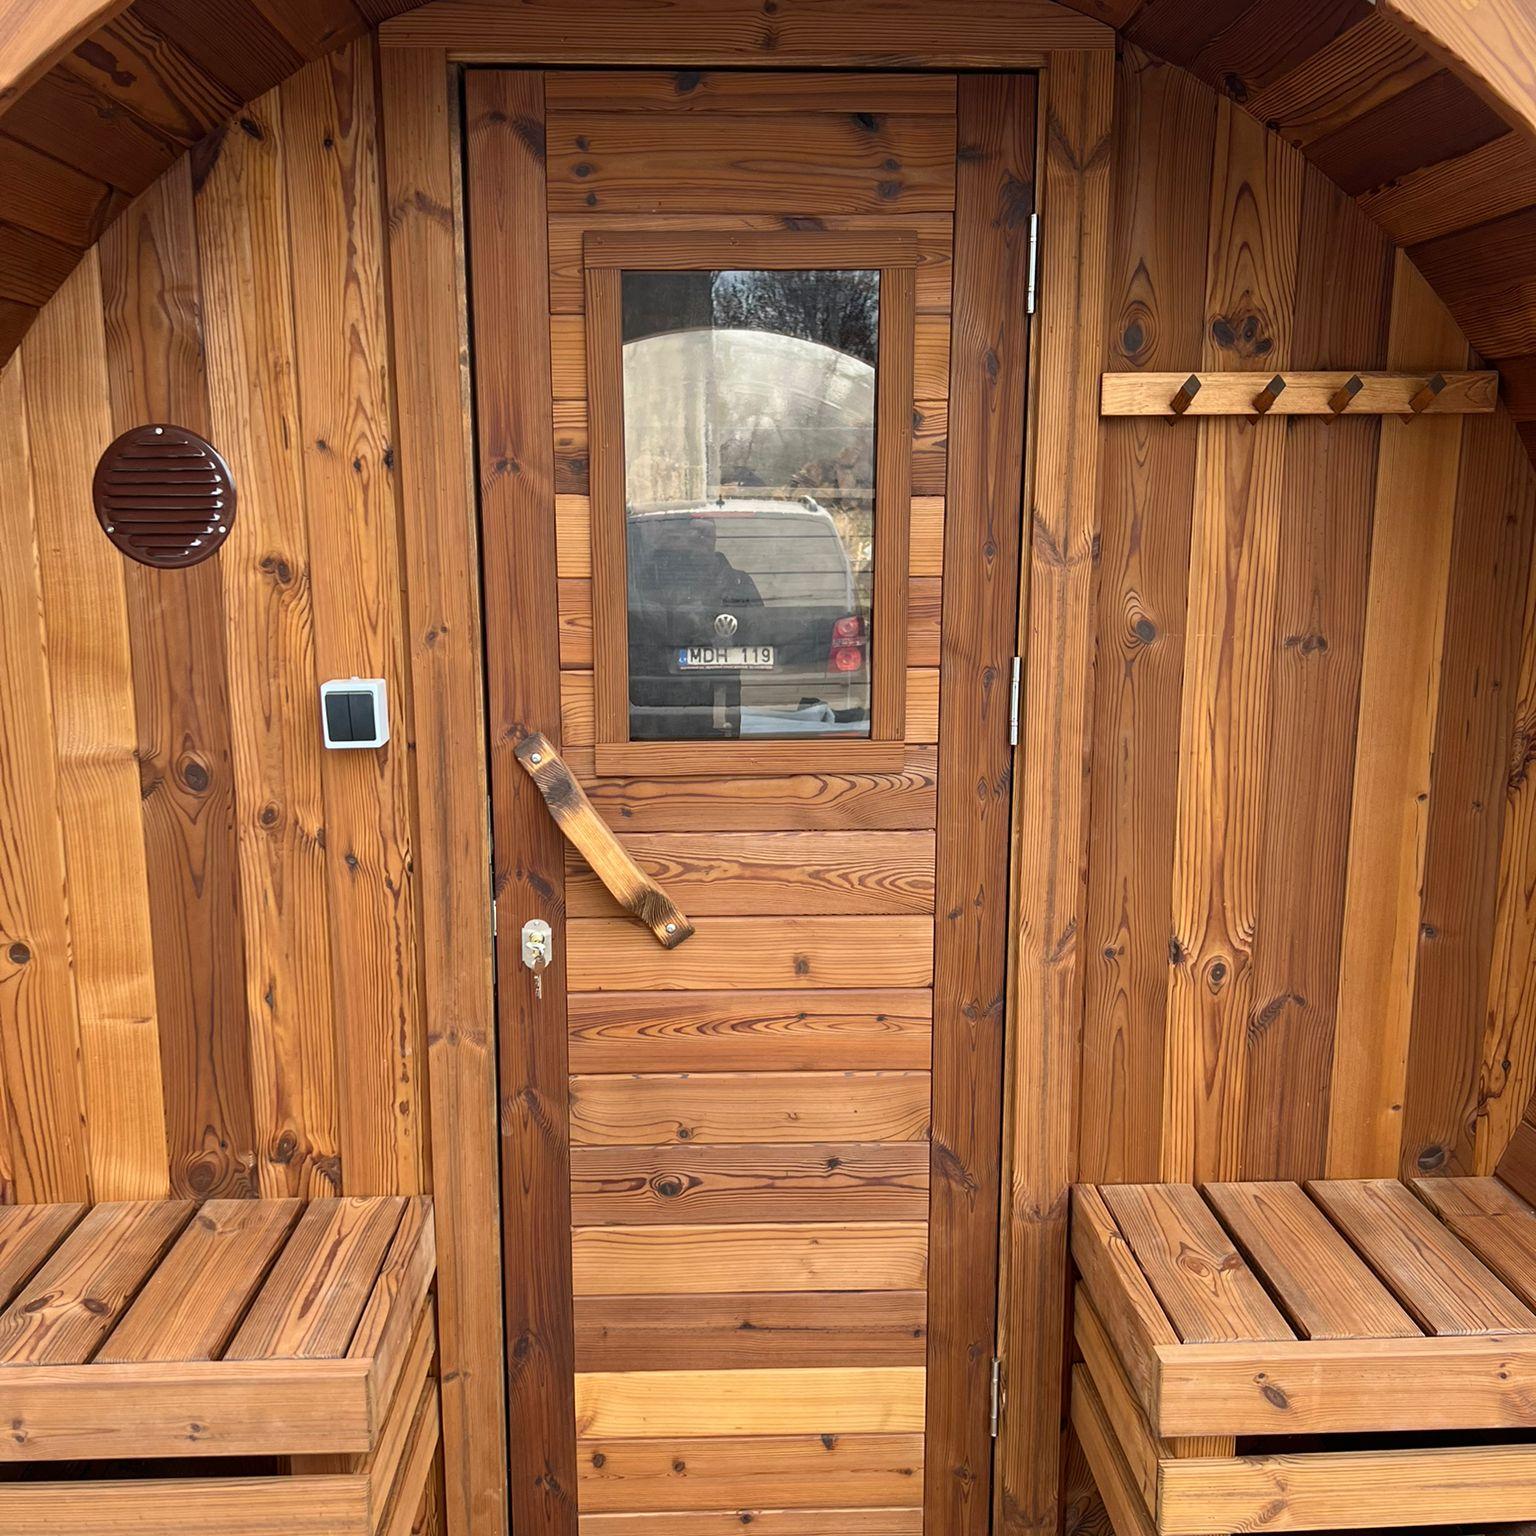 Które drewno do sauny wybrać – świerk skandynawski czy ThermoWood?